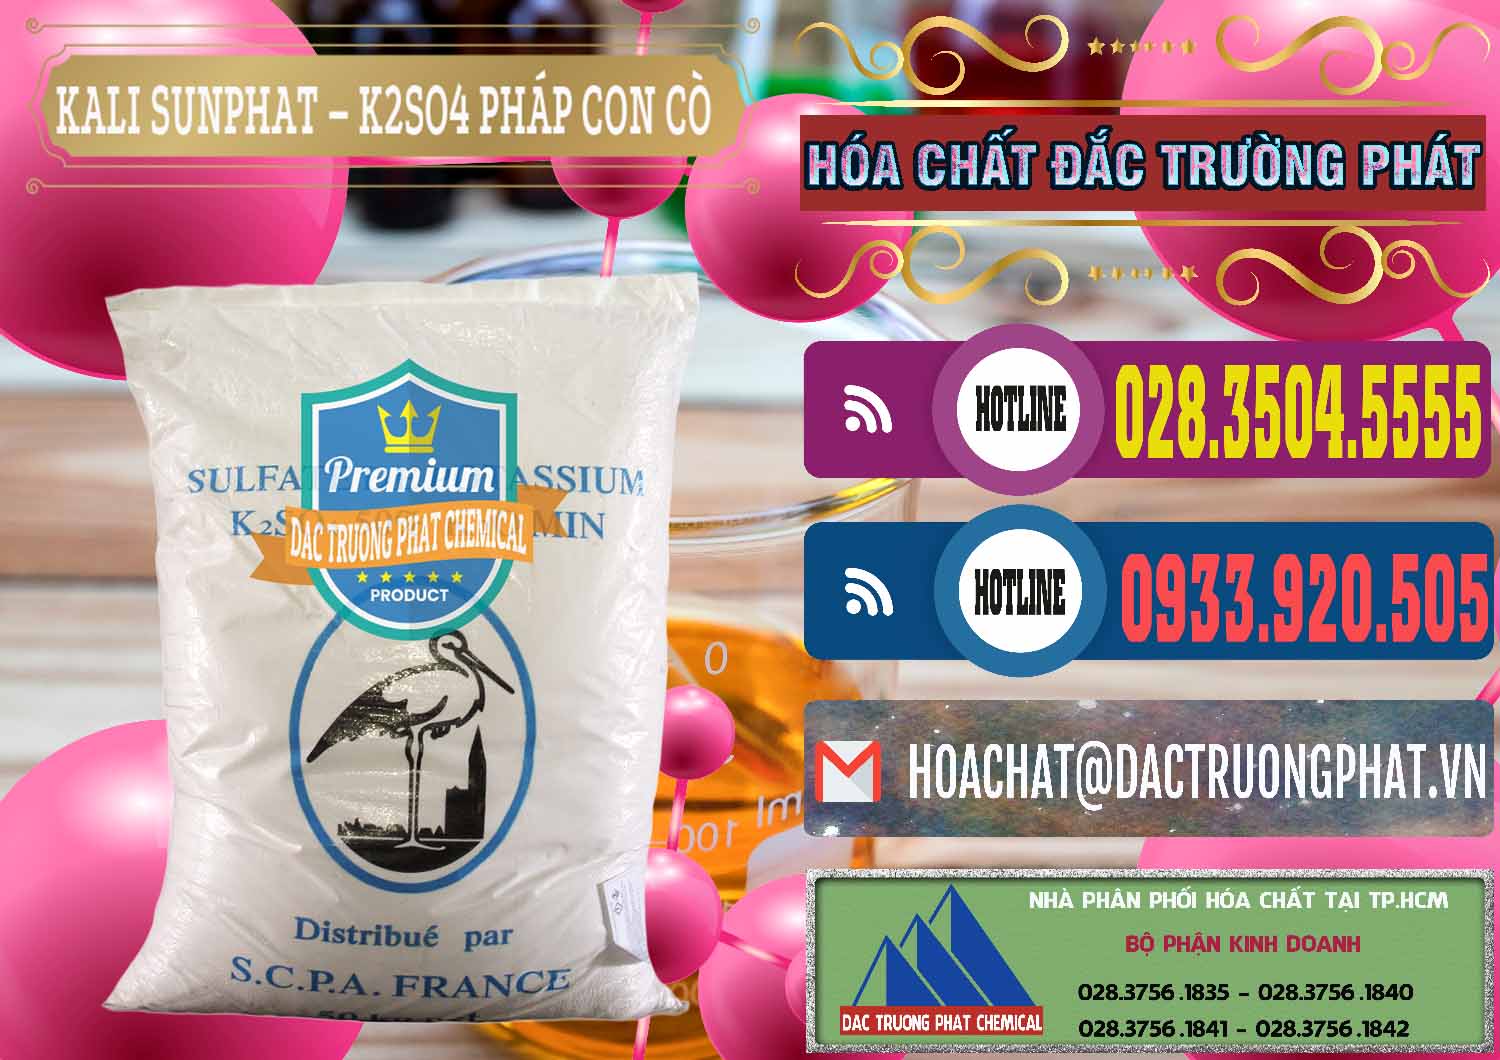 Cty chuyên bán _ cung cấp Kali Sunphat – K2SO4 Con Cò Pháp France - 0083 - Công ty chuyên cung ứng & phân phối hóa chất tại TP.HCM - muabanhoachat.com.vn